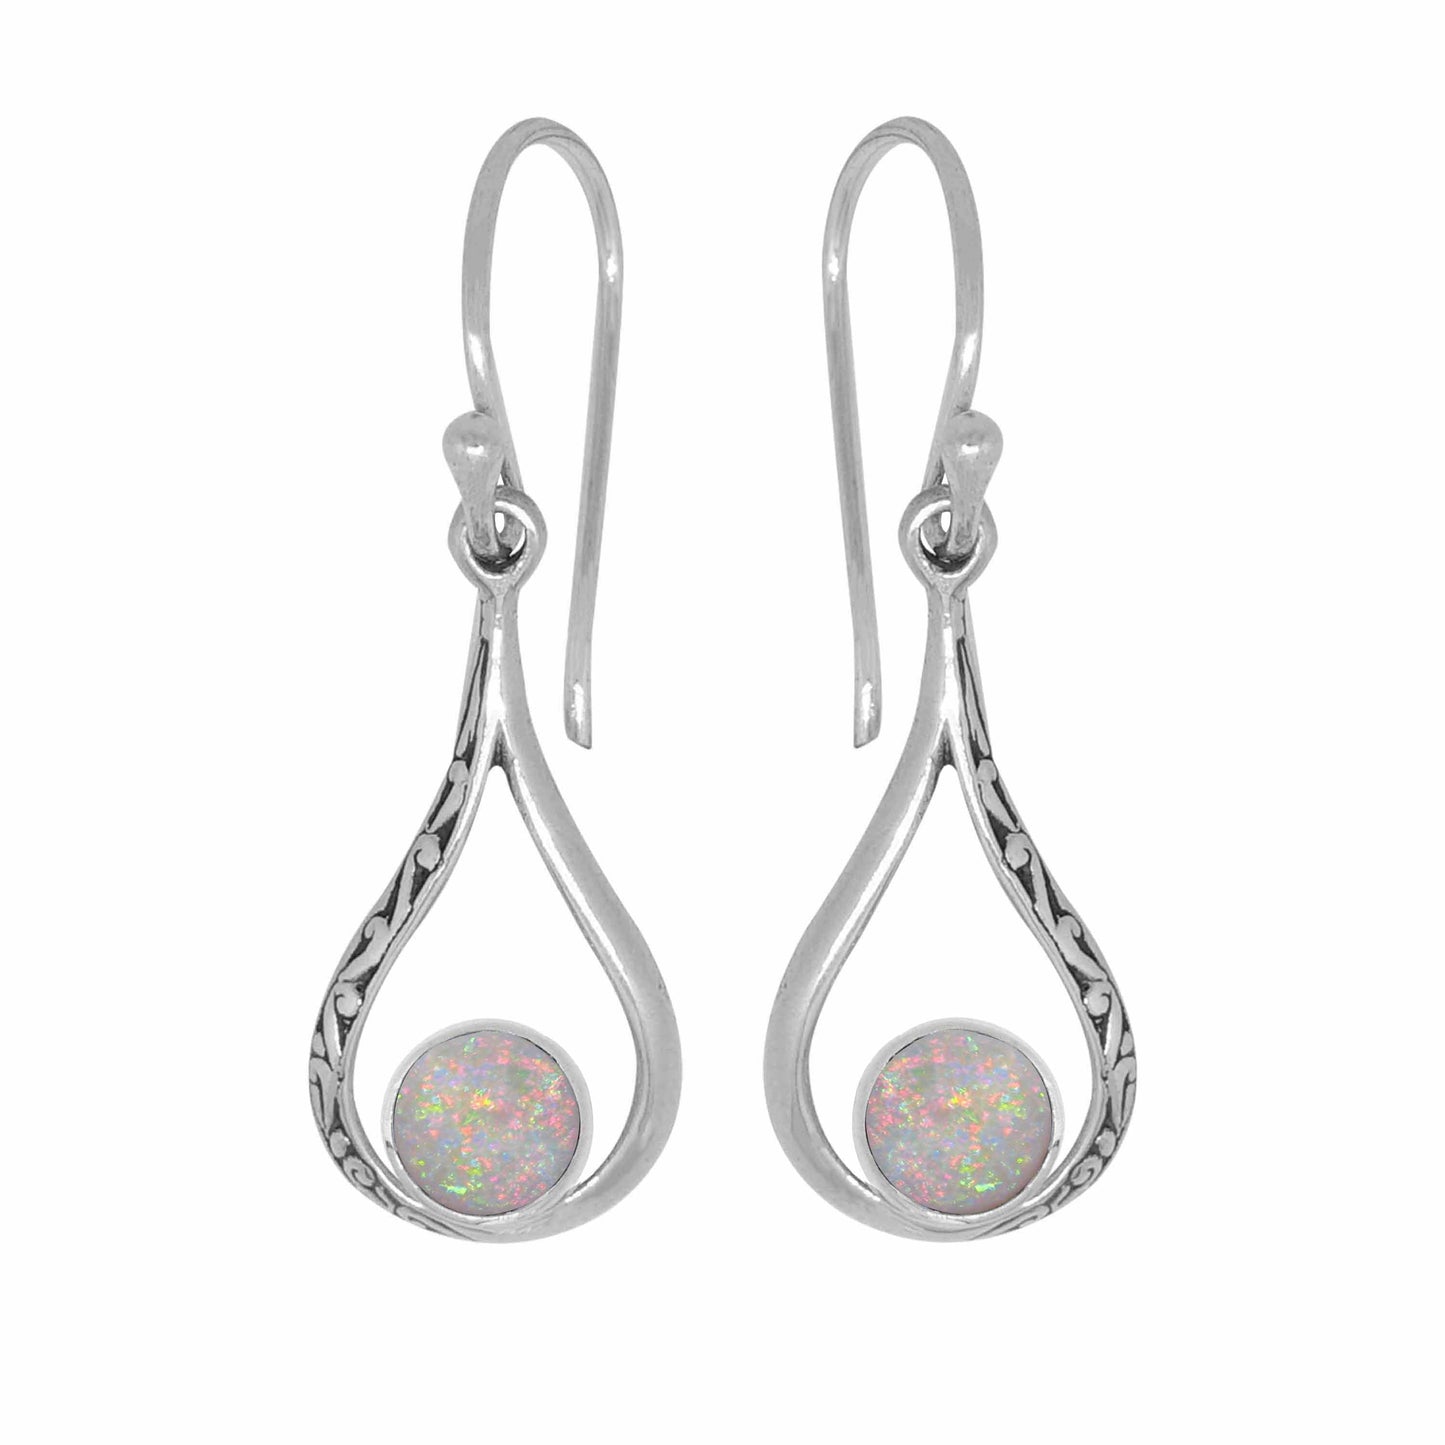 Earring Gemstones - 82379